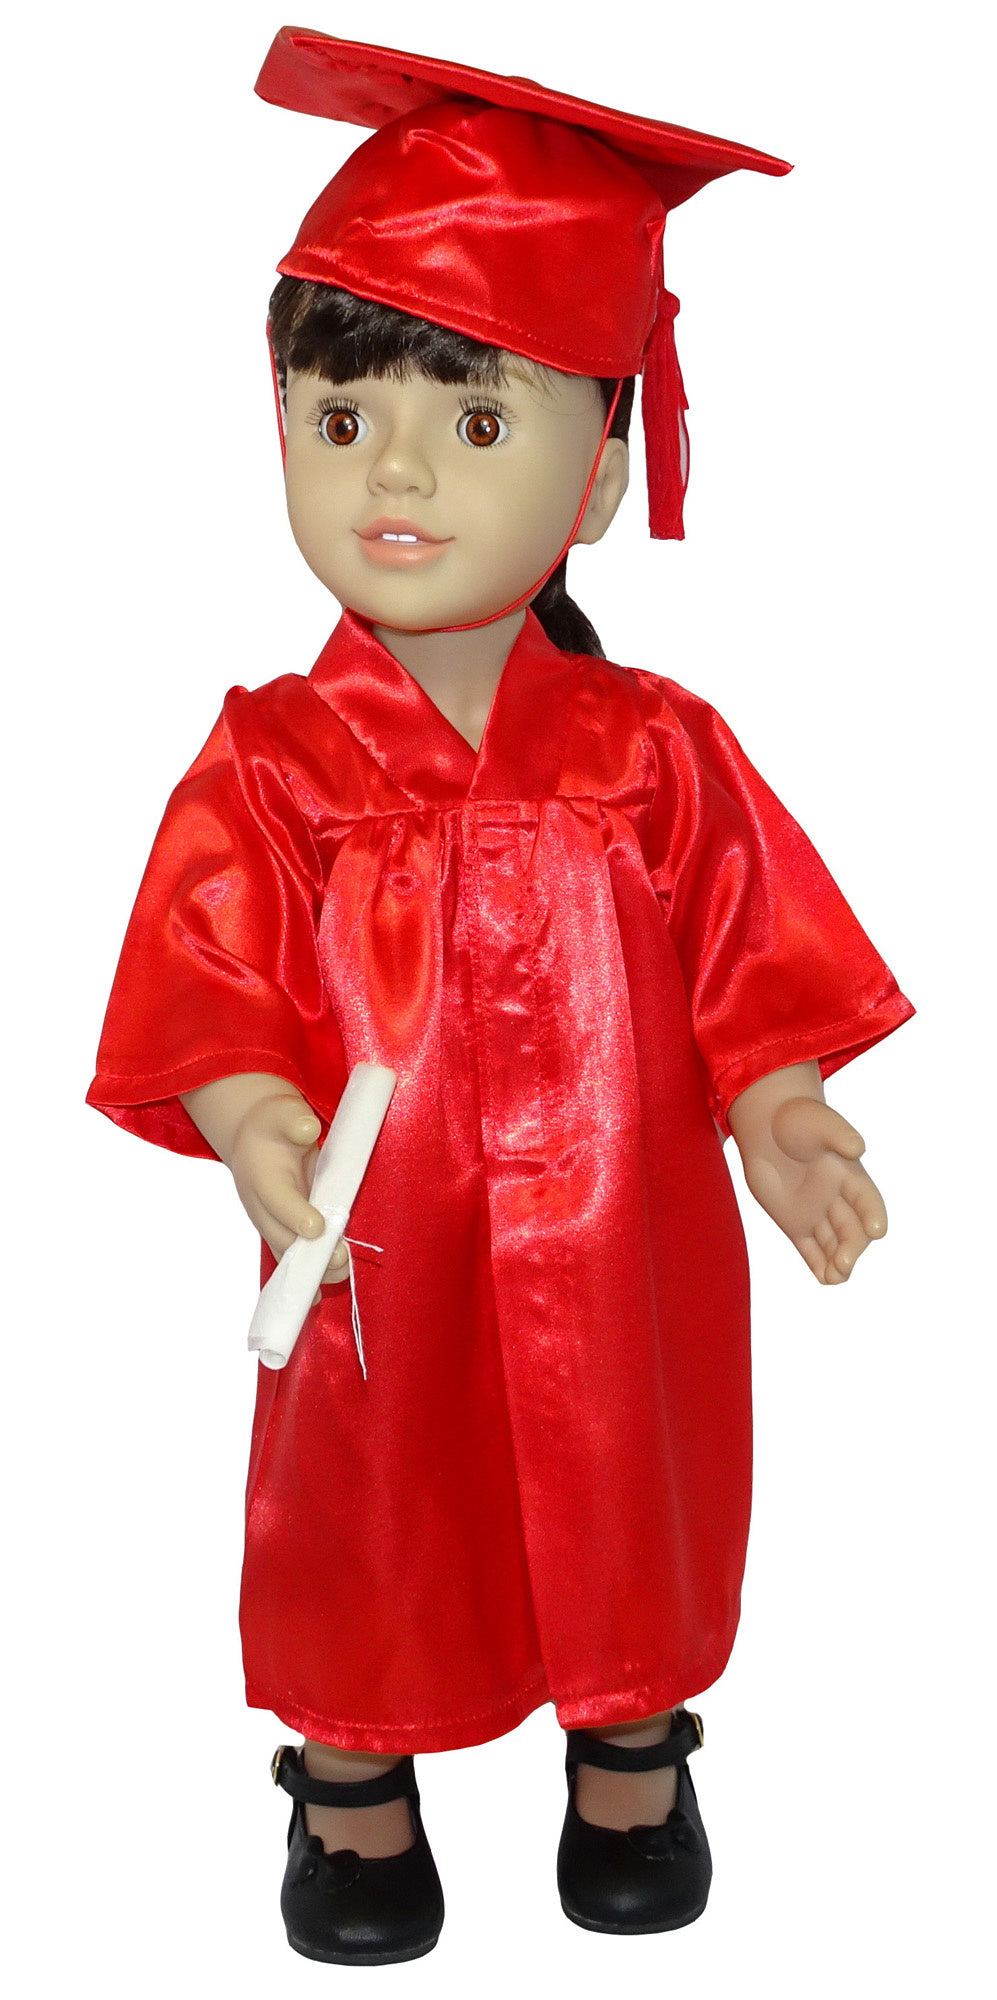 Dolls Graduation Set - Red or Black